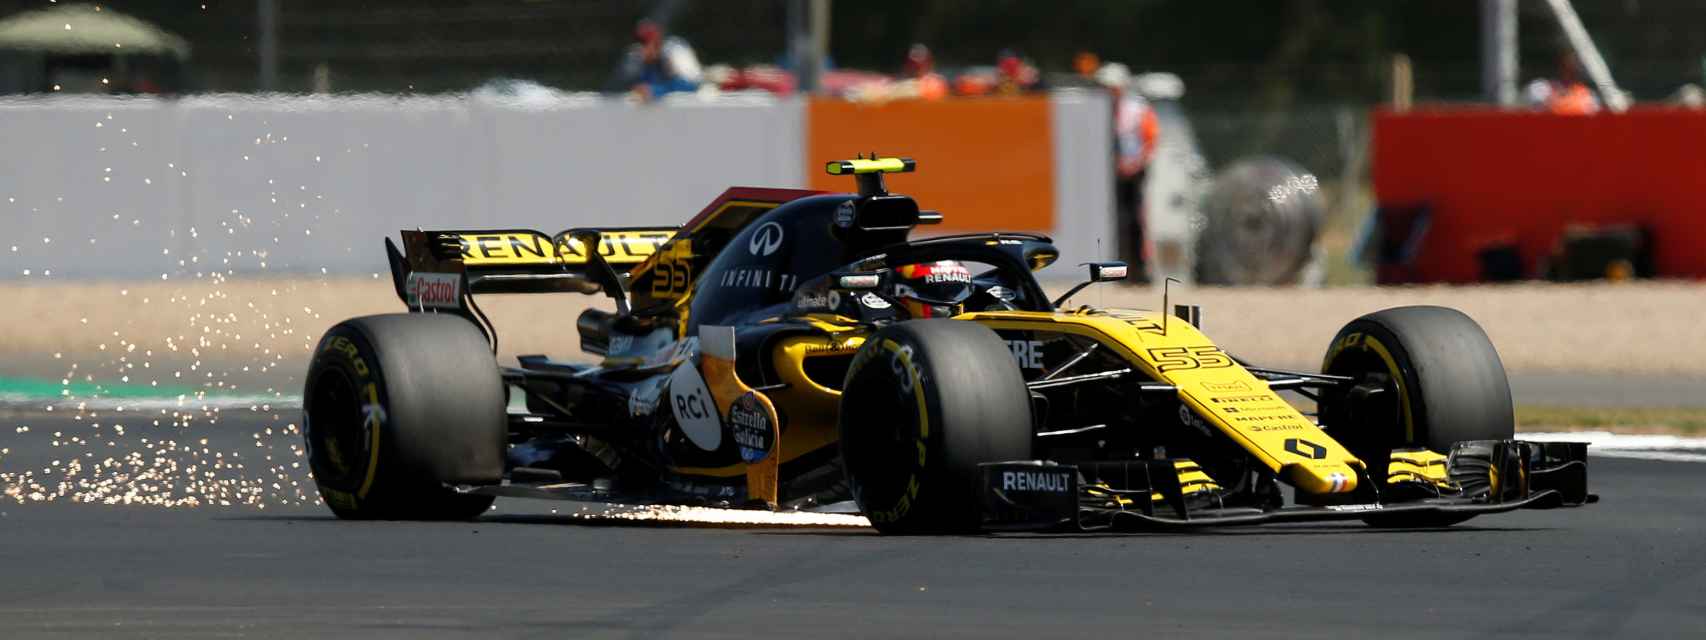 Carlos Sainz, durante el Gran Premio de Reino Unido